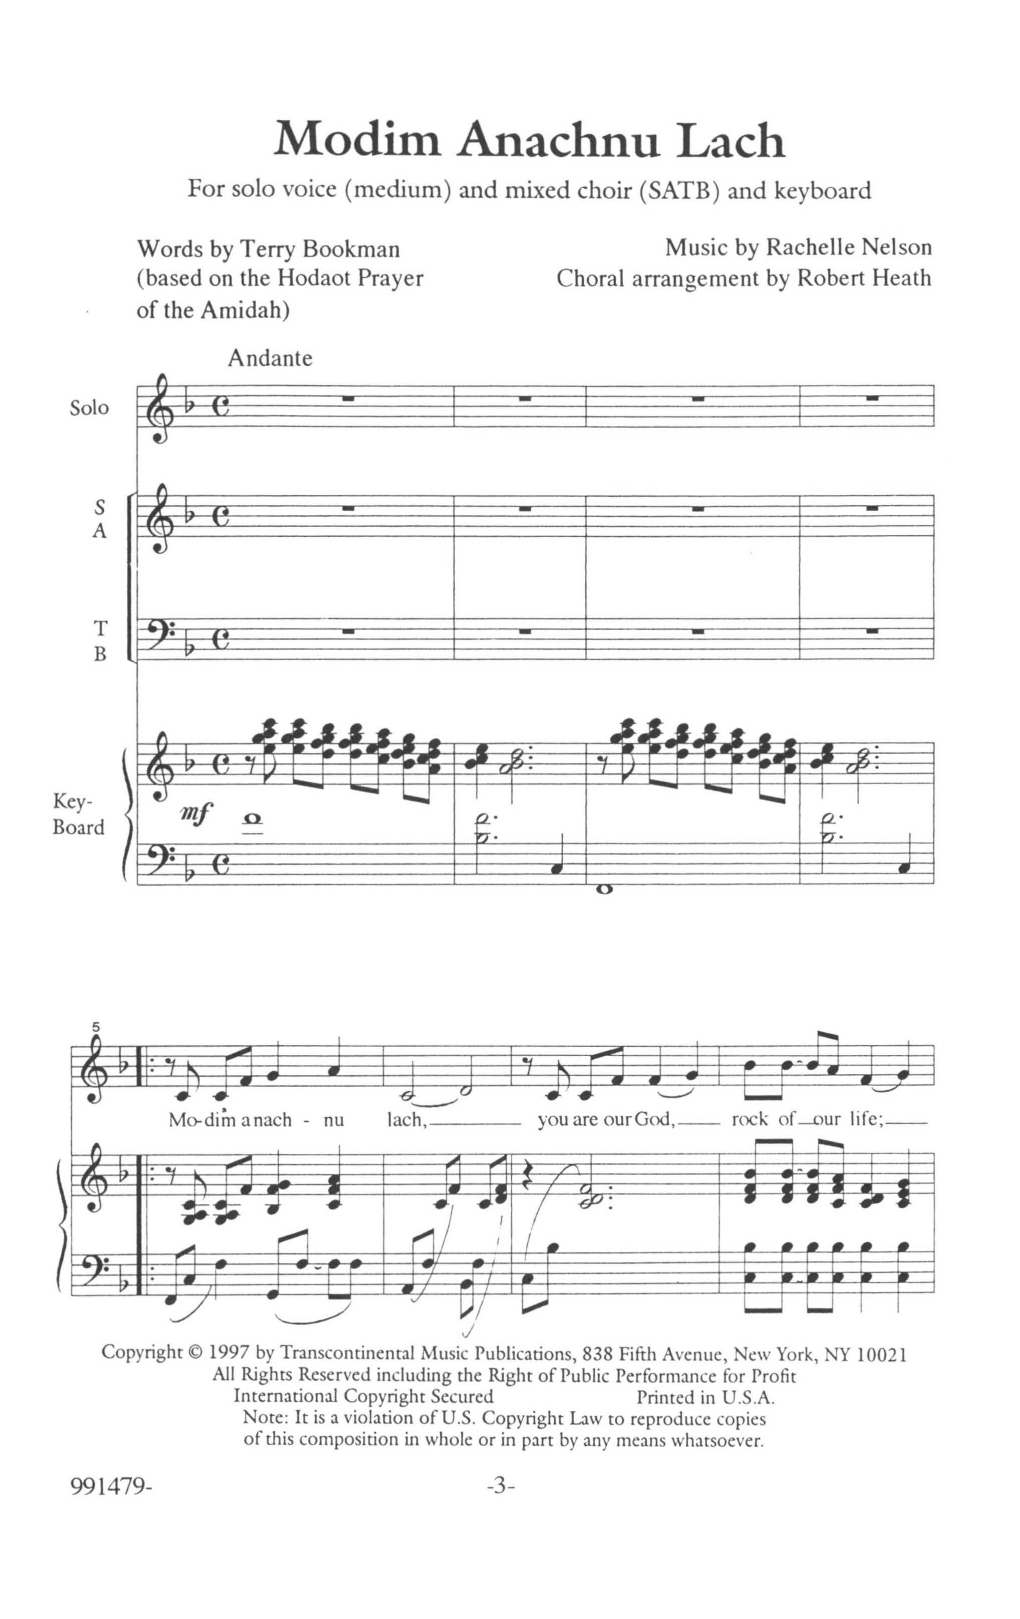 Rachelle Nelson Modim Anachnu Lach Solo Sheet Music Notes & Chords for SATB Choir - Download or Print PDF